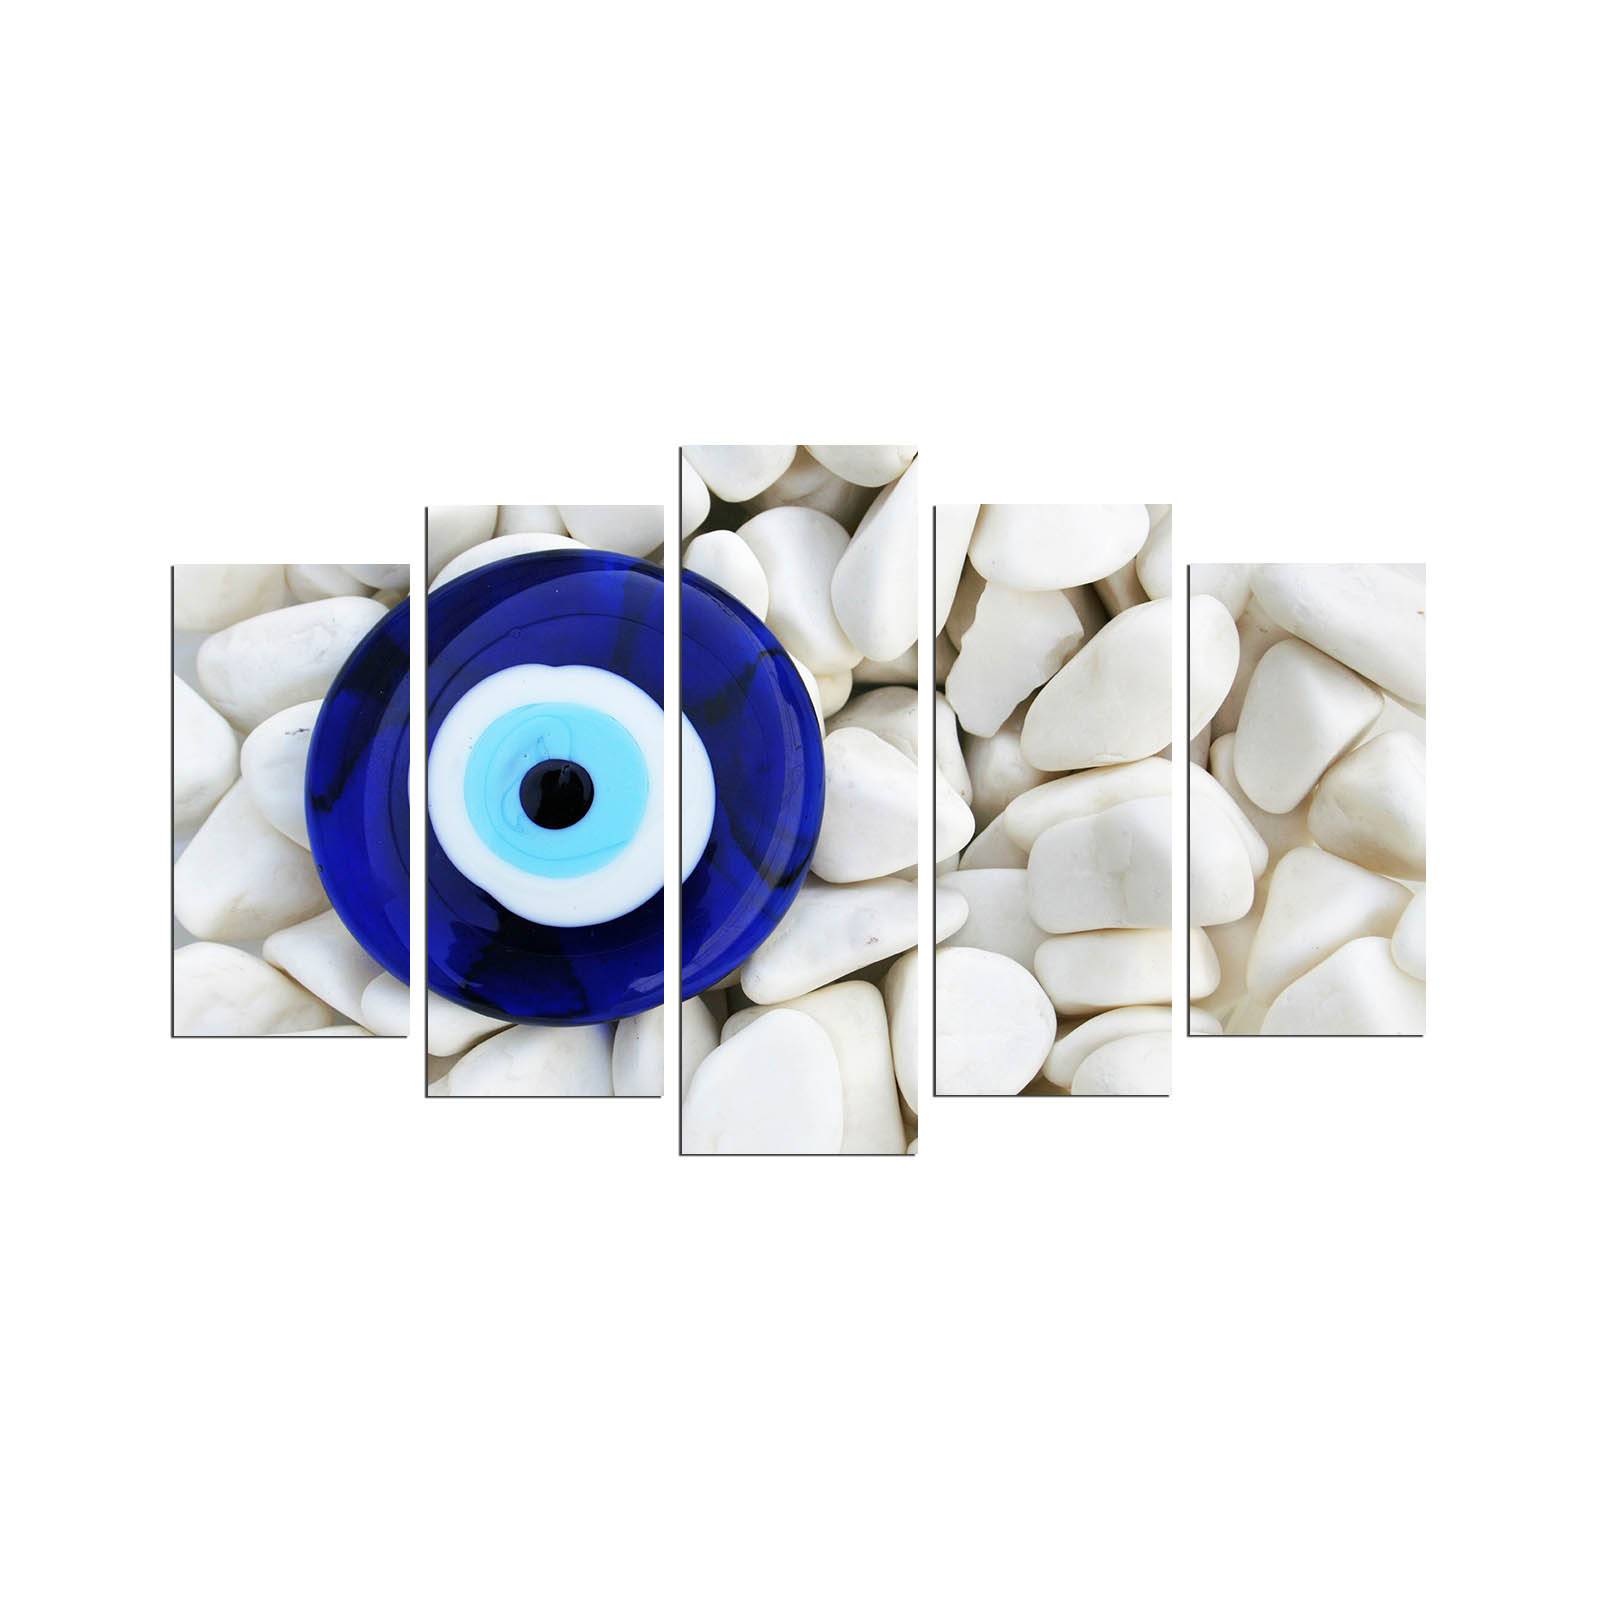 Pentaptychon Grex Gravel Pattern Türkisch blaues Auge